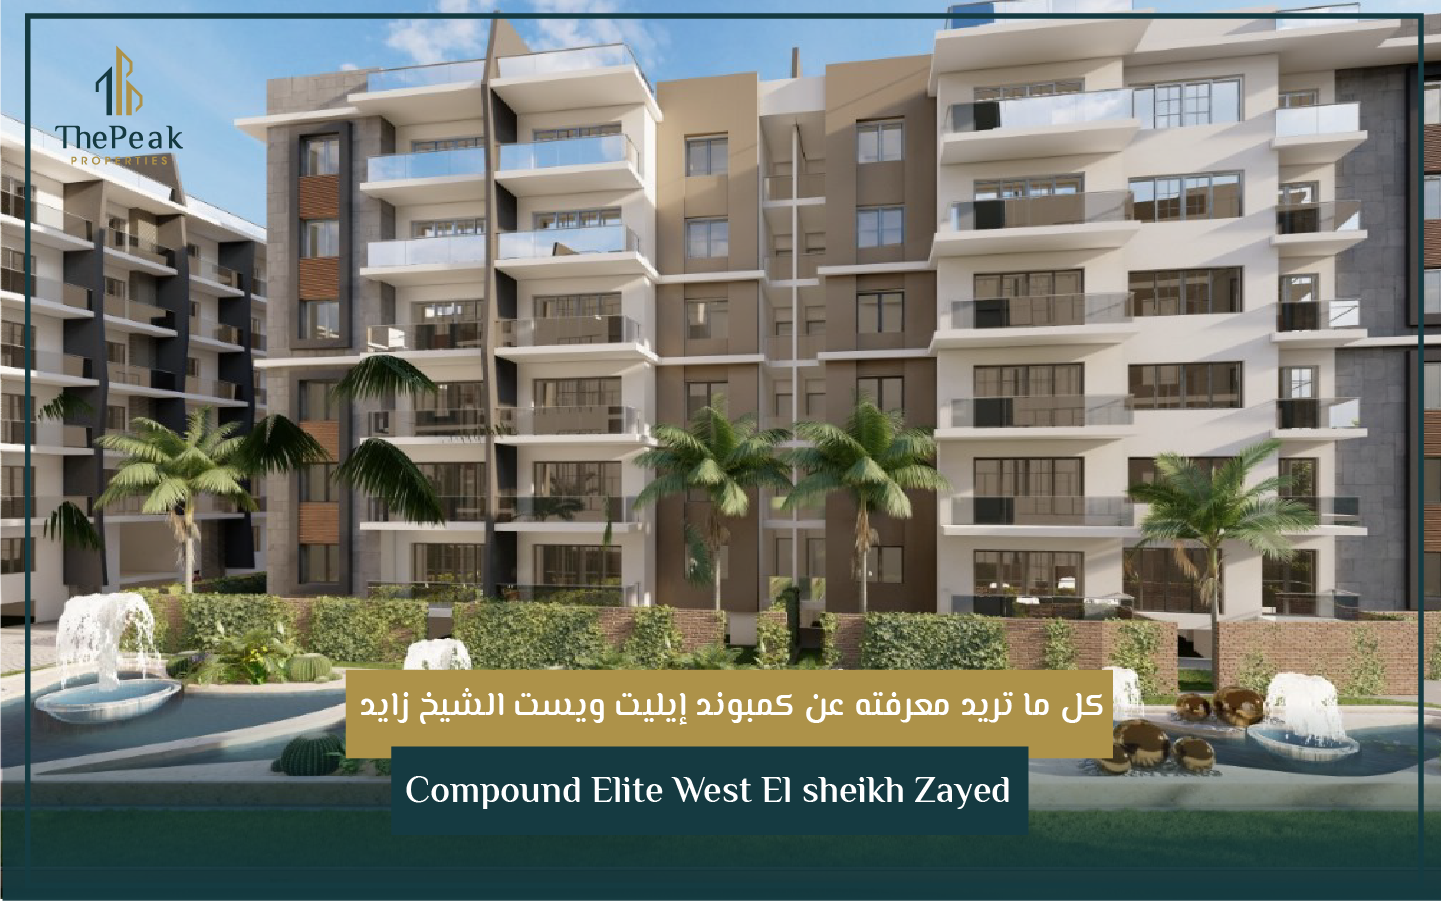 بنتهاوس للبيع بالتقسيط في الشيخ زايد  مساحة 250 متر + 100متر  مقدم 15 % و تقسيط يصل إلي 8 سنوات  في مشروع Compound Elite West El sheikh Zayed | THE PEAK PROPERTIES